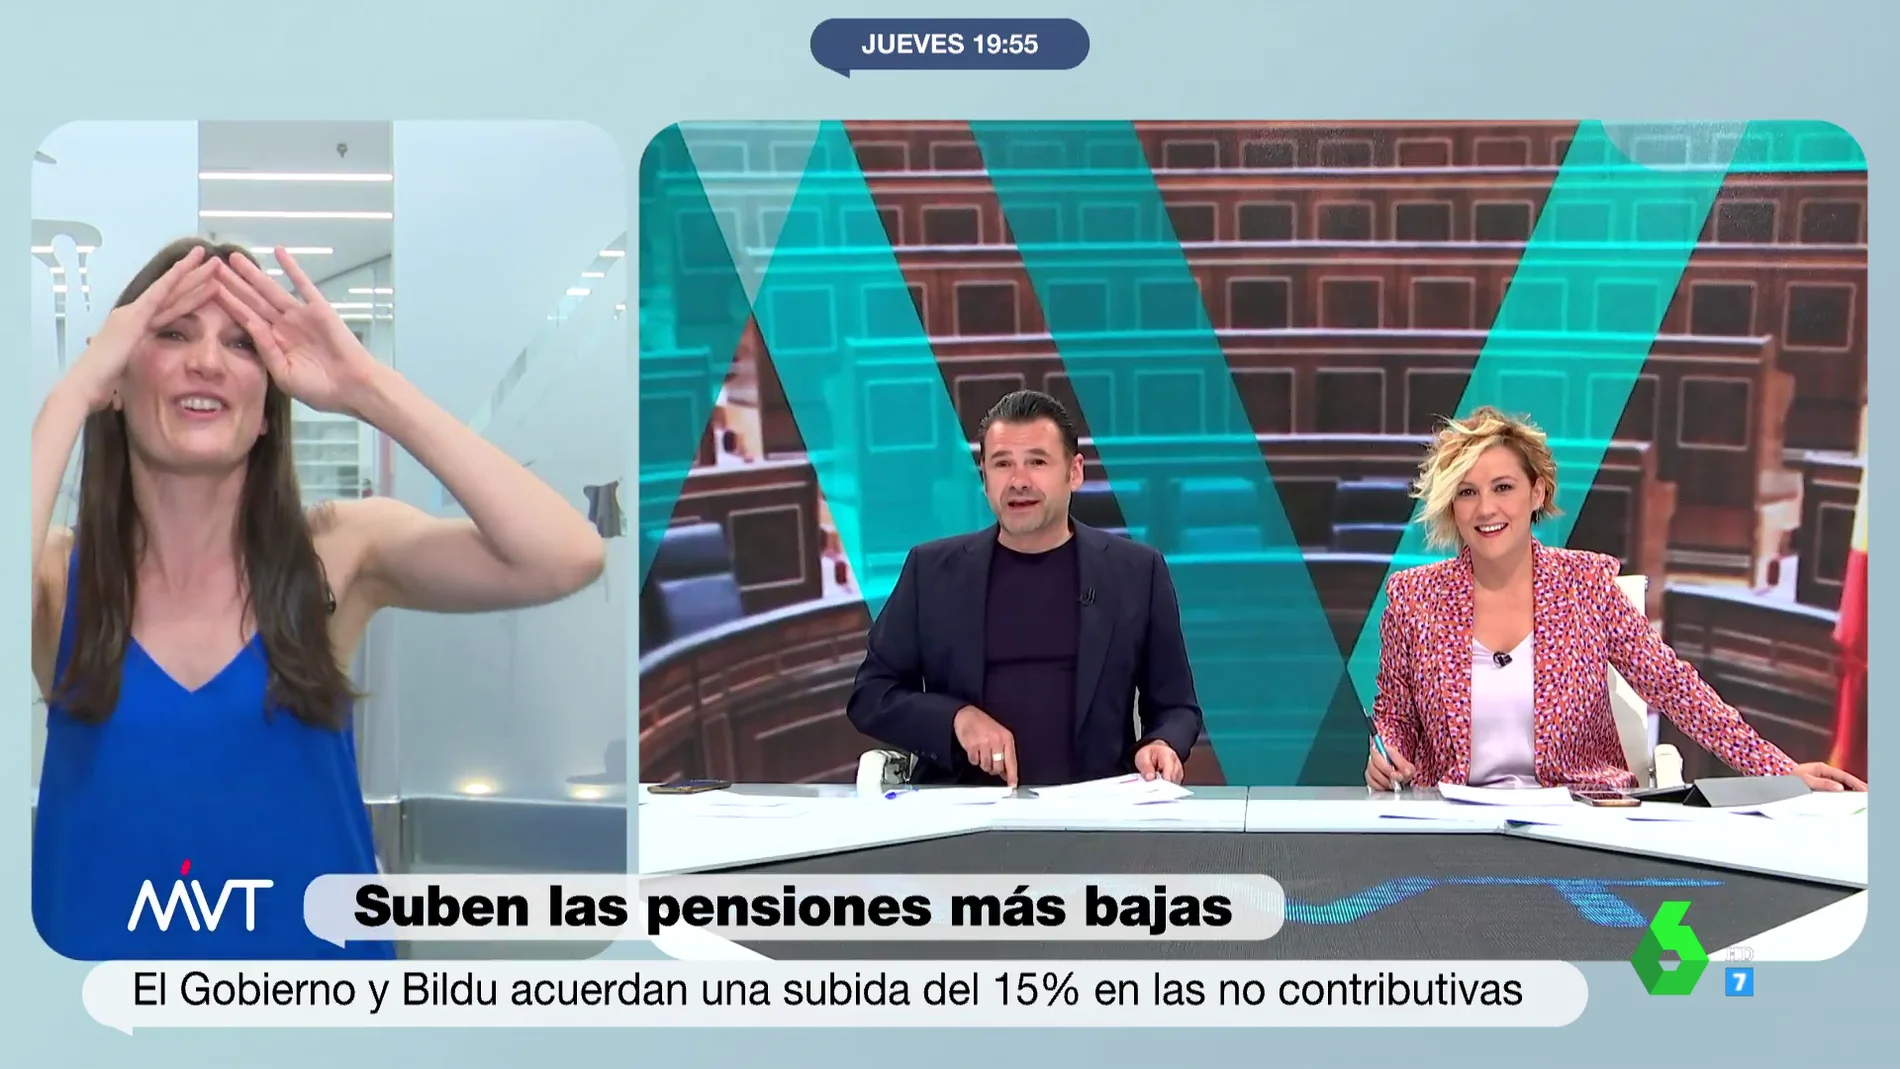 "¡Menos mal que ya he llorado todo!": el divertido despiste de Cristina Pérez tras despedirse de laSexta sin saber que estaba en directo